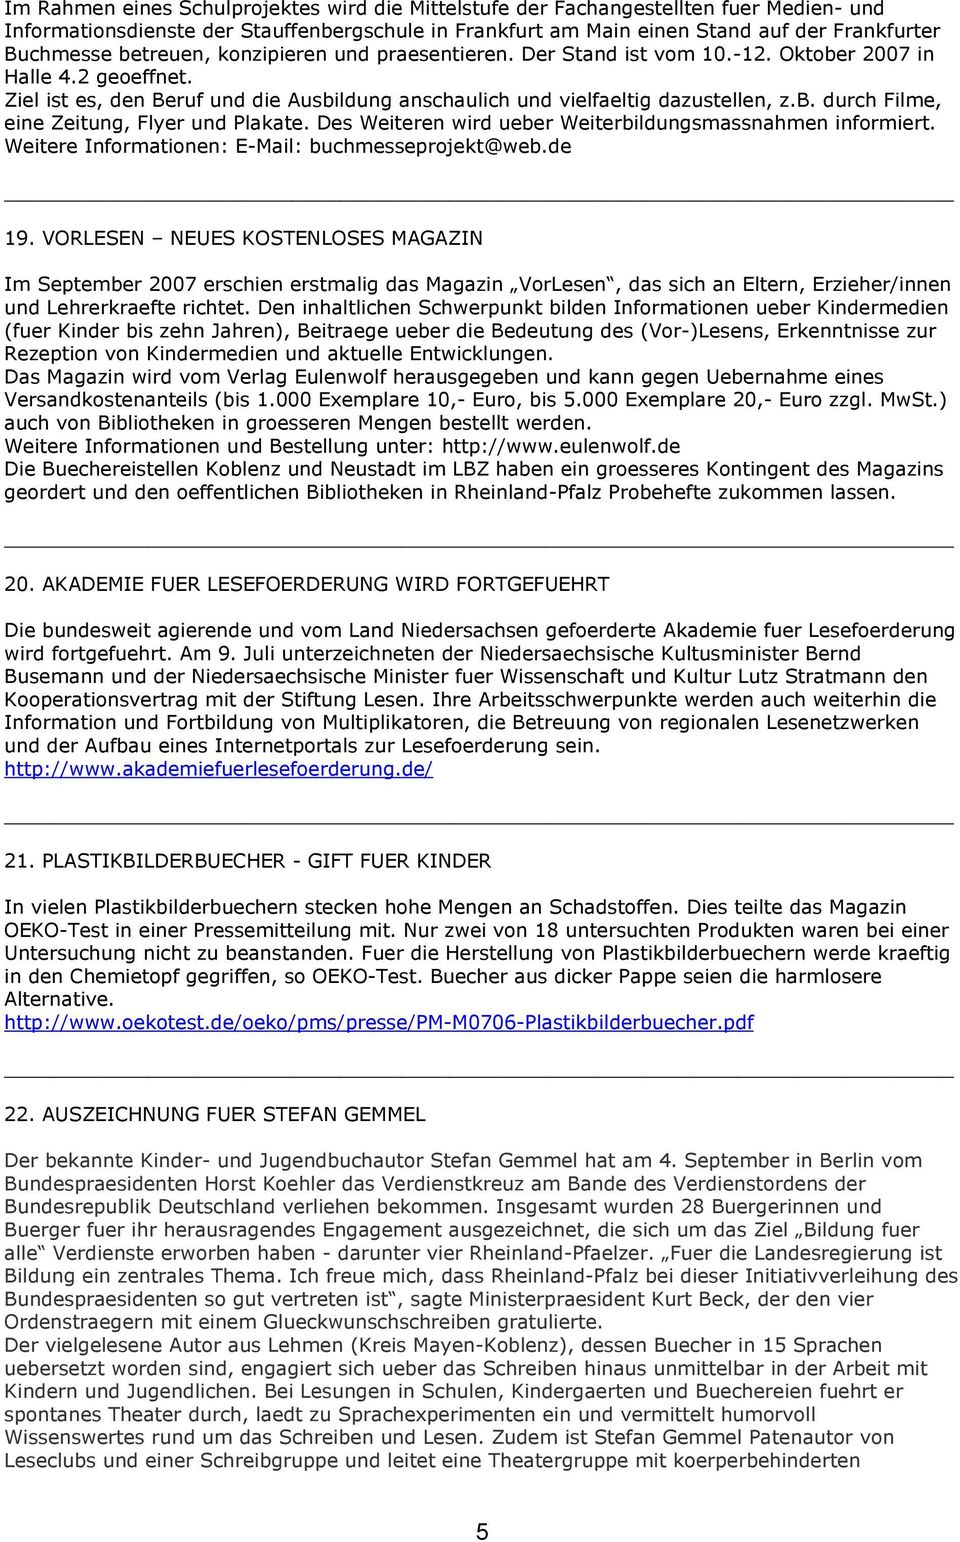 Des Weiteren wird ueber Weiterbildungsmassnahmen informiert. Weitere Informationen: E-Mail: buchmesseprojekt@web.de 19.